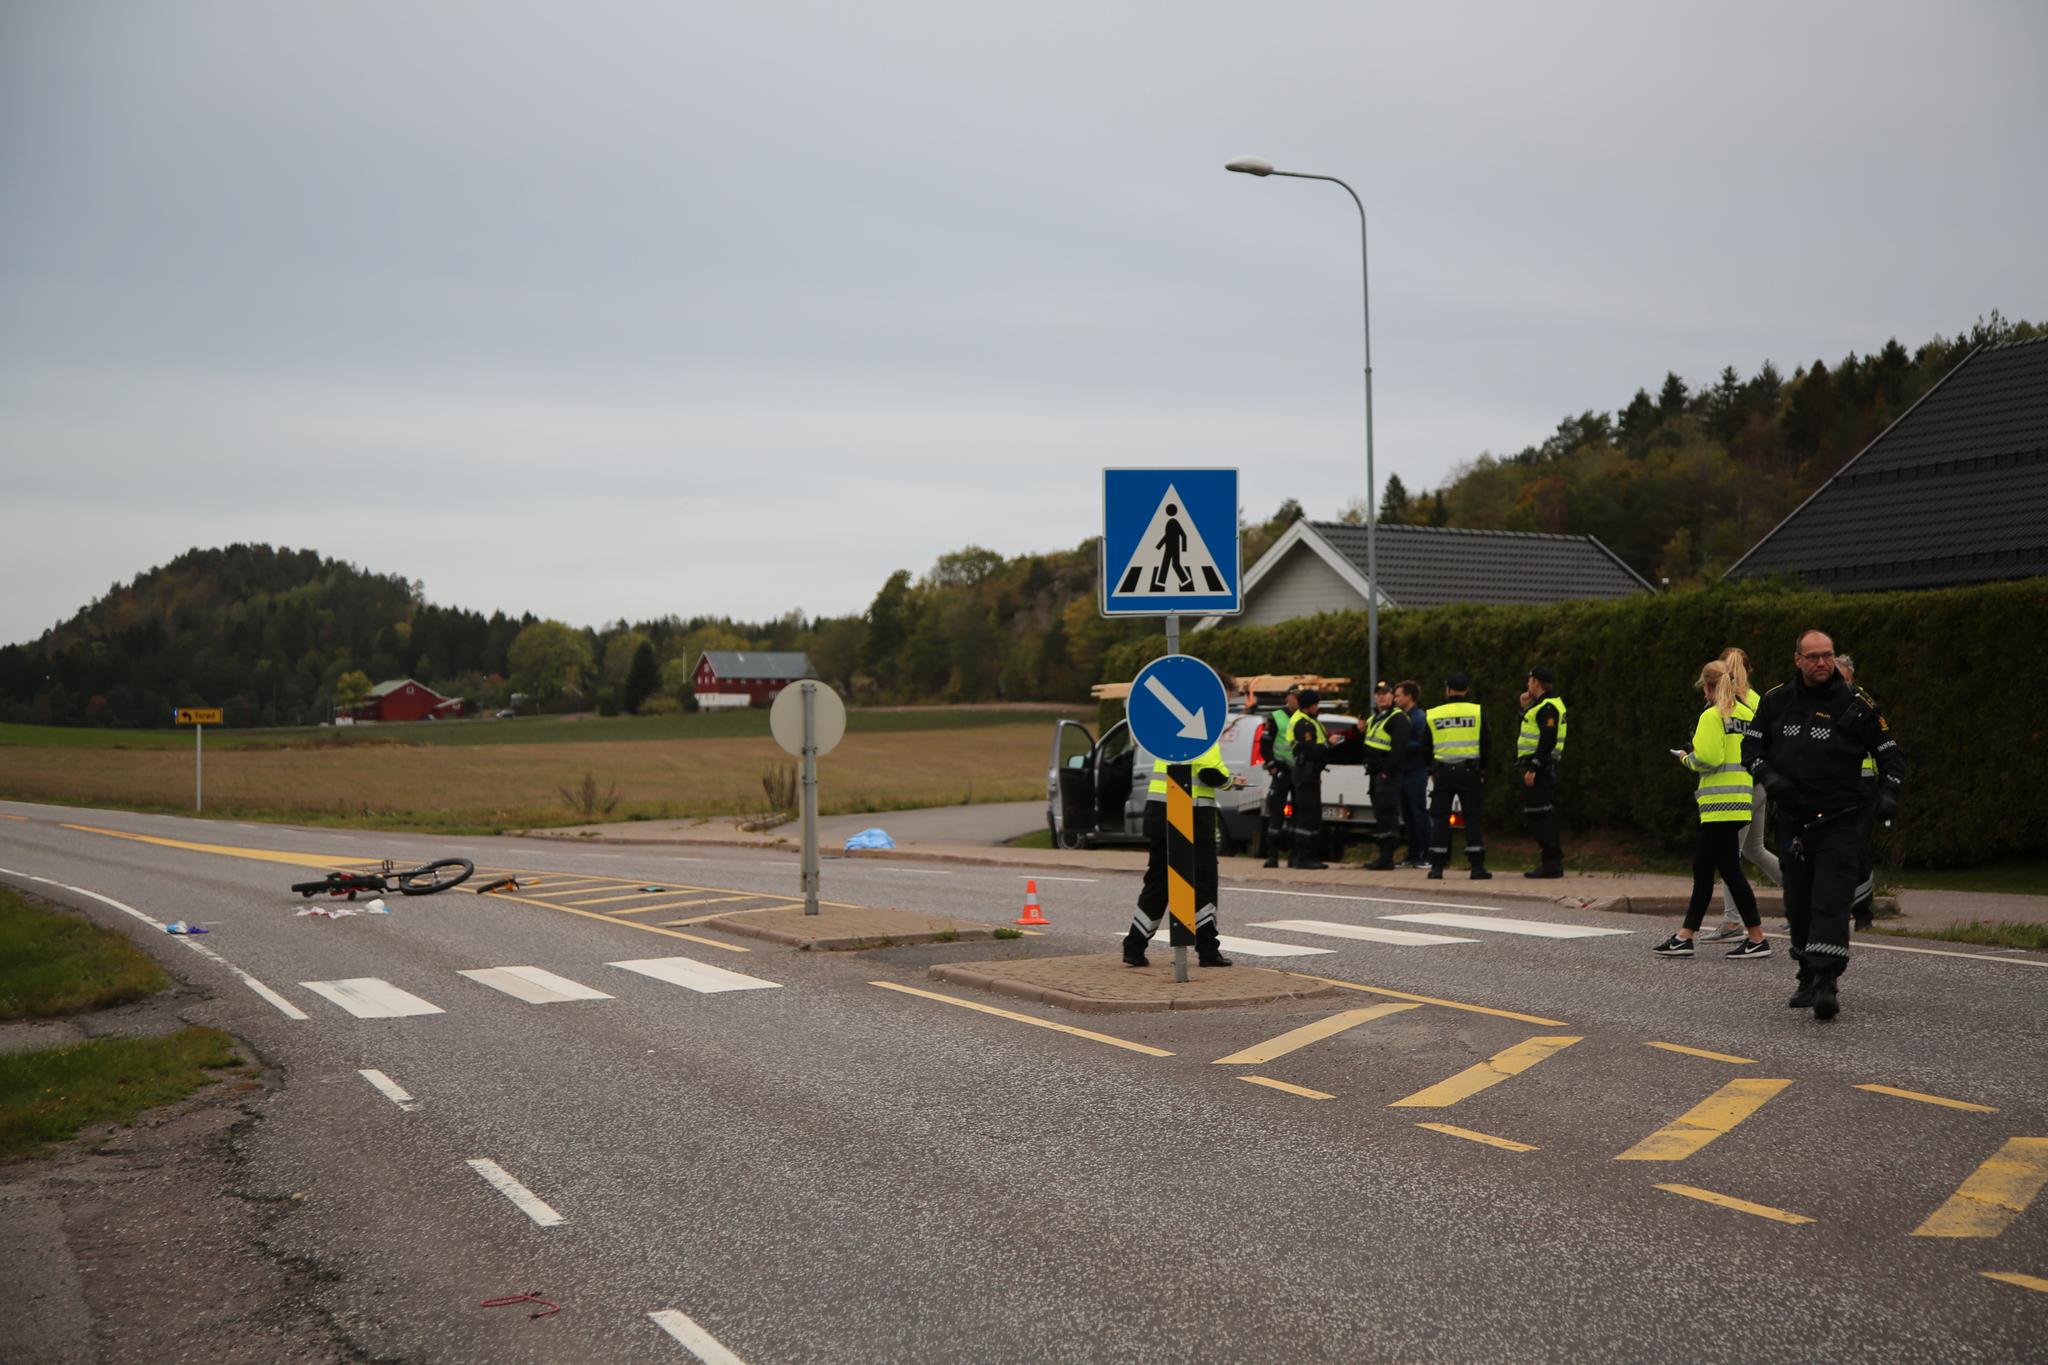  Syklisten ble påkjørt da han krysset i fotgjengerfeltet i Kirkeveien på Nøtterøy. Bilisten skal ha kommet kjørende i samme retning som syklisten sydover mot Tjøme.